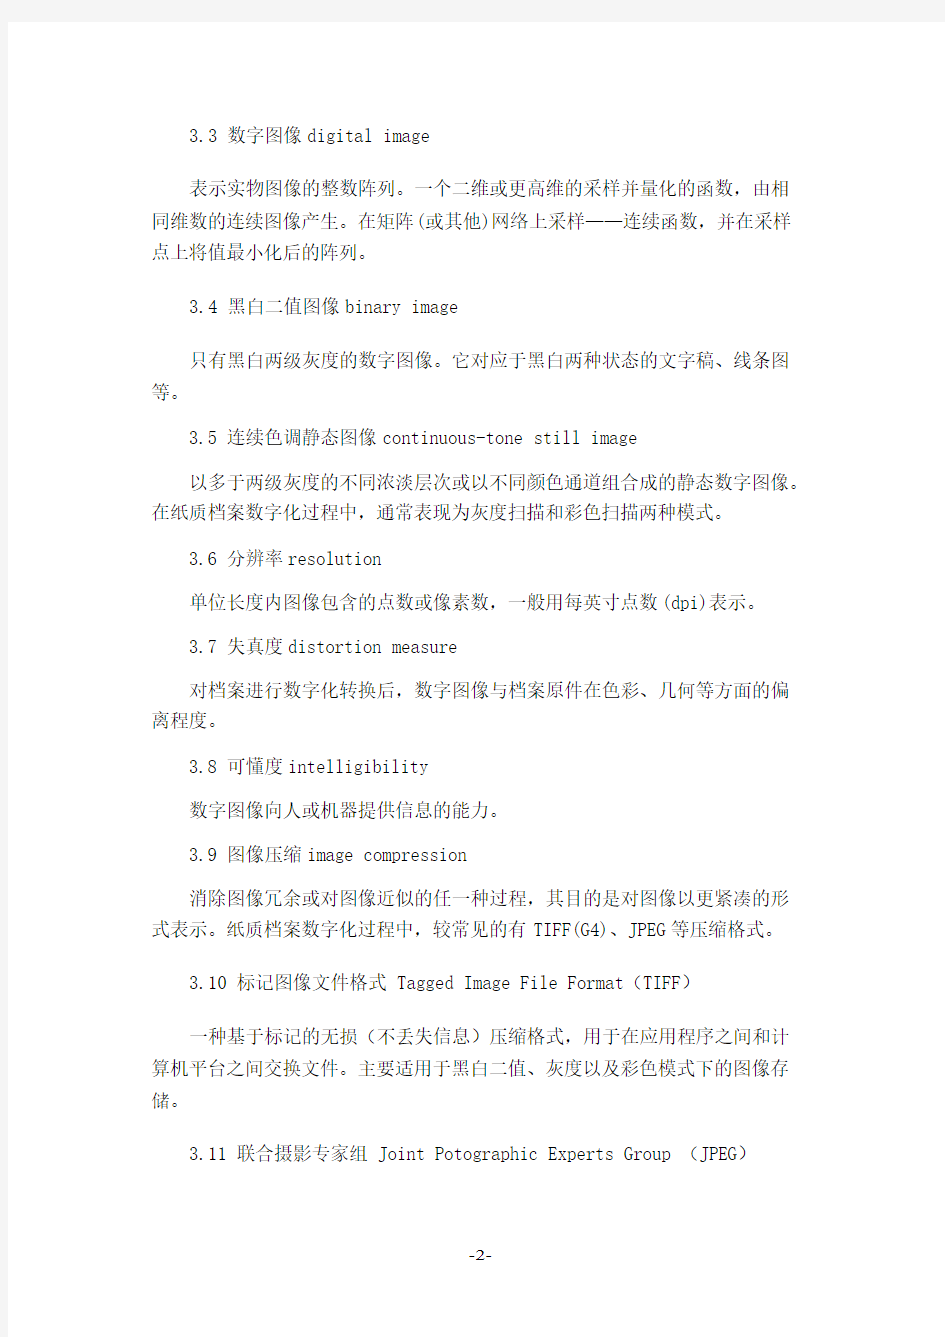 南京中医药大学档案馆纸质档案数字化技术规范